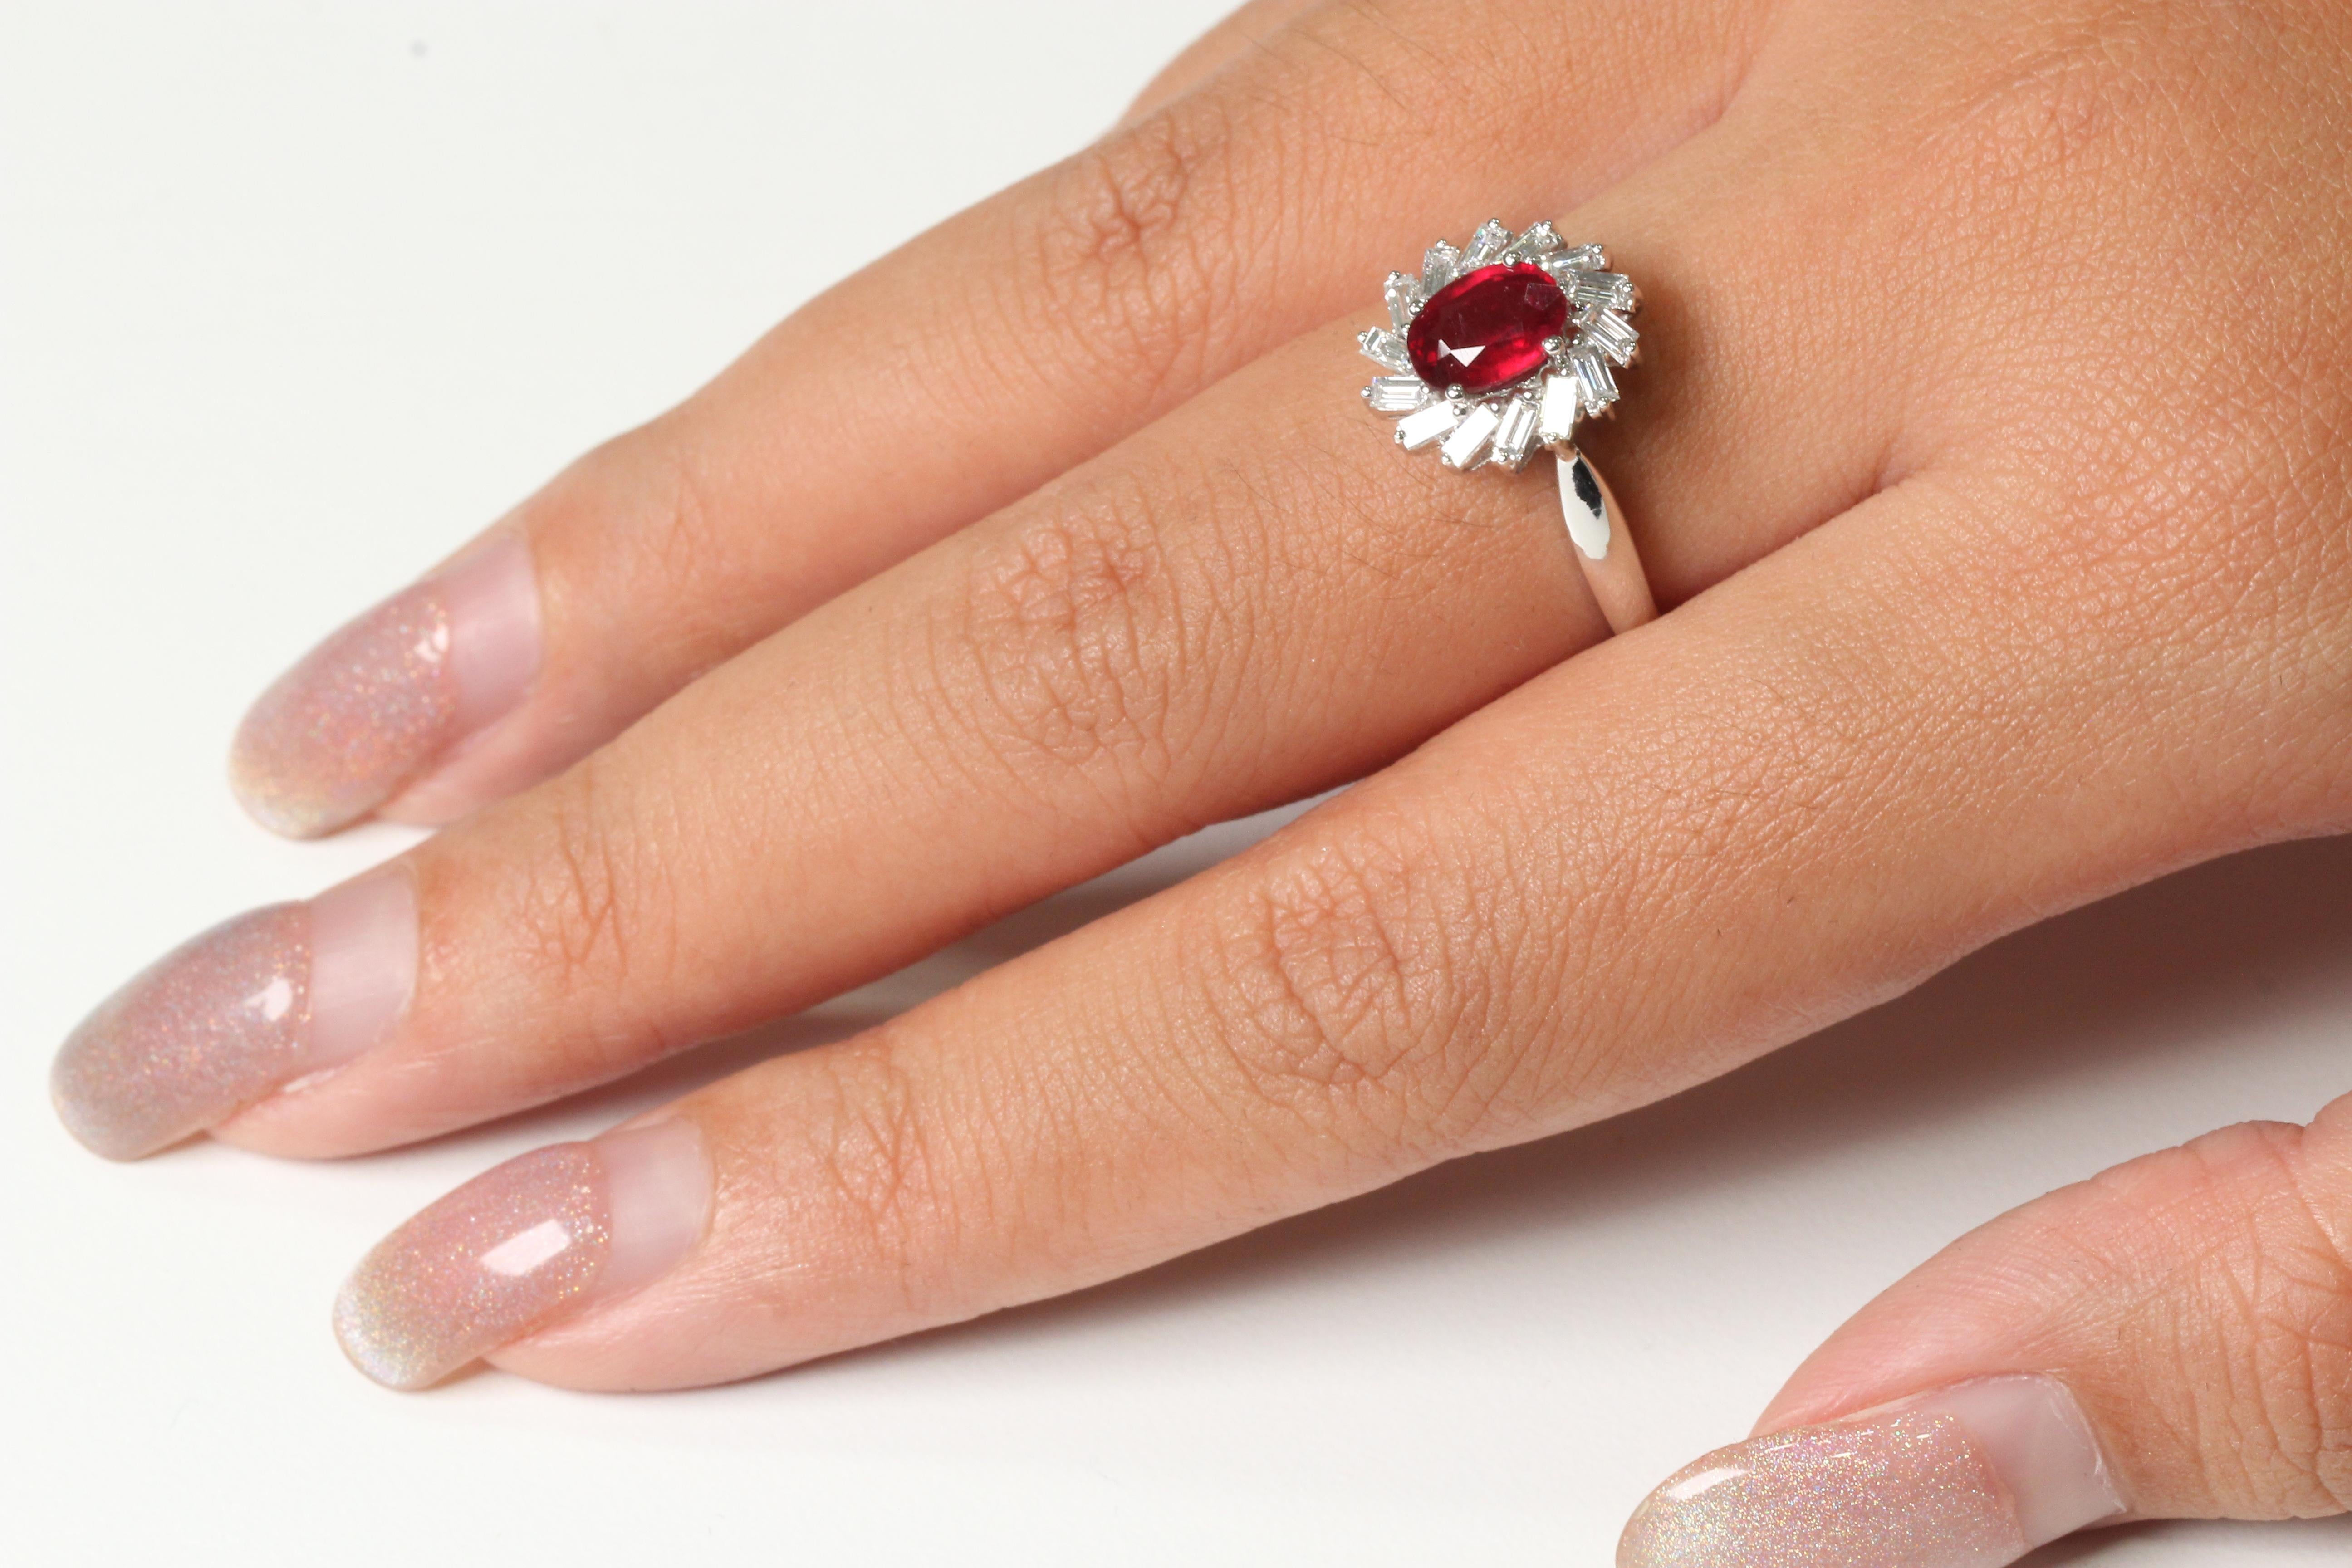  Mit diesem Ring können Sie sich der Aufmerksamkeit aller sicher sein. Dieses Stück besteht aus einem glasgefüllten Rubin und Diamantsteinen in einer Fassung im antiken Stil. Die Kombination dieser Materialien und das Design dieses Rings heben ihn